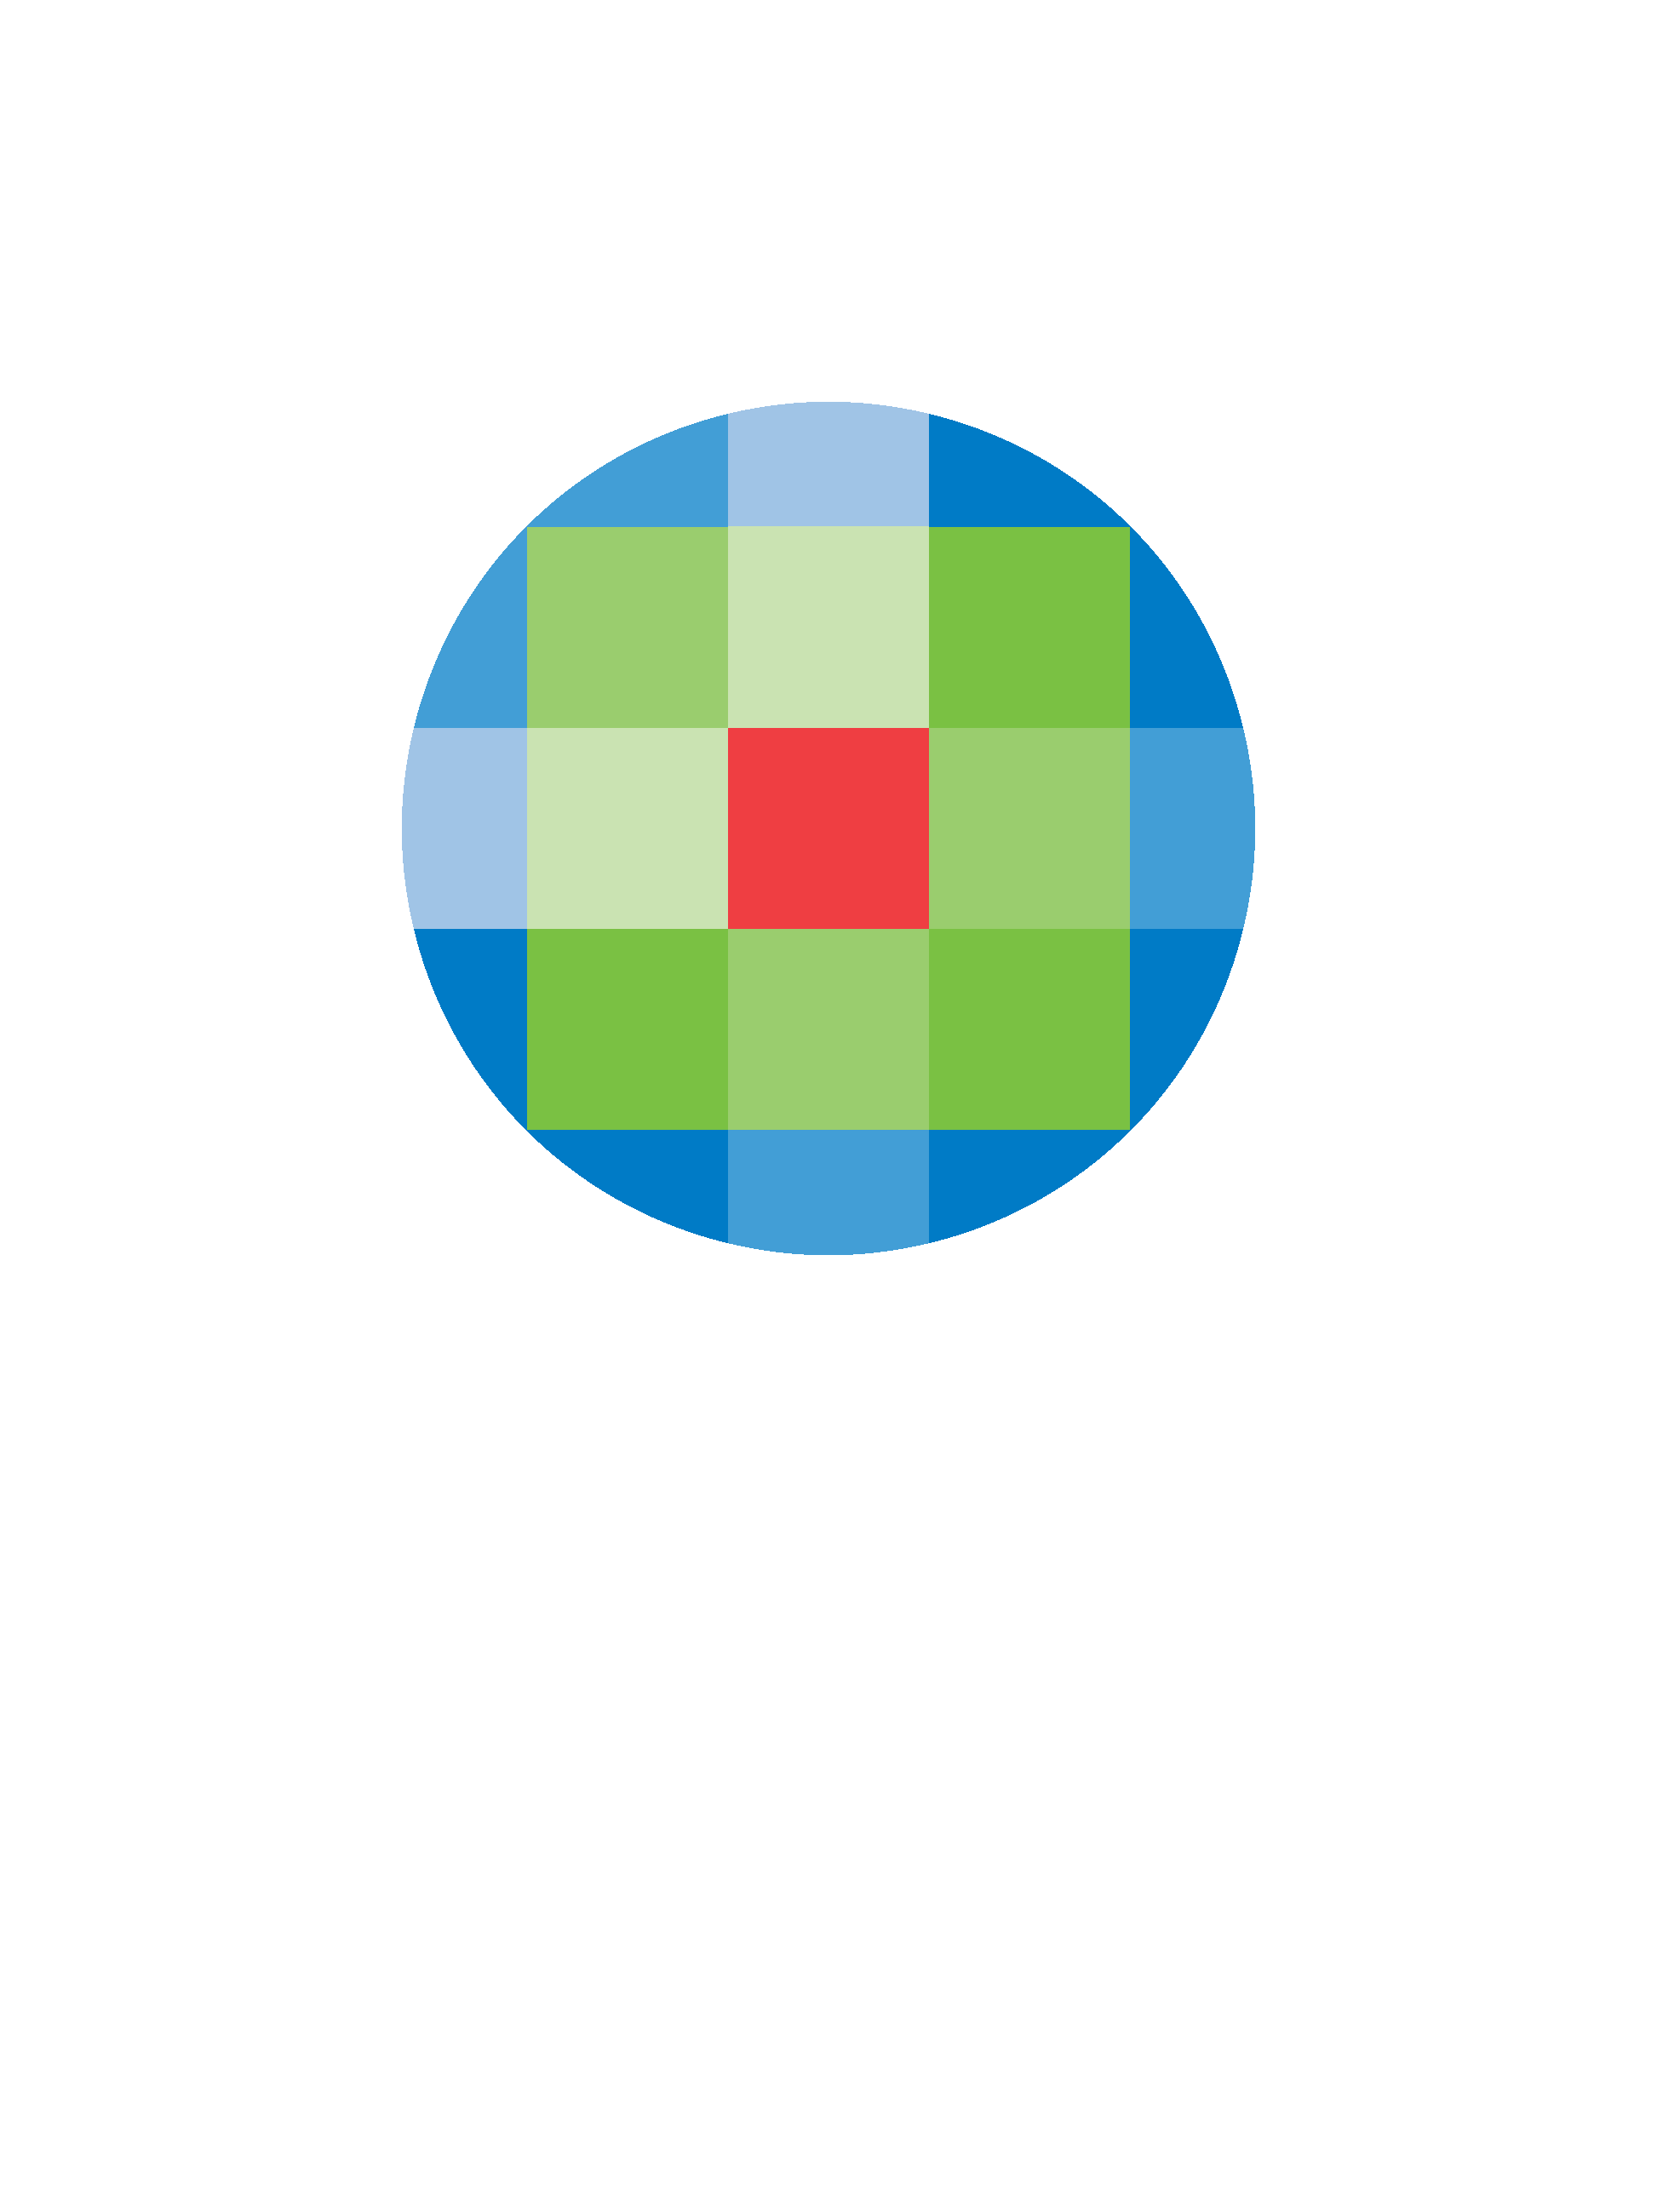 Walters Klewer Logo